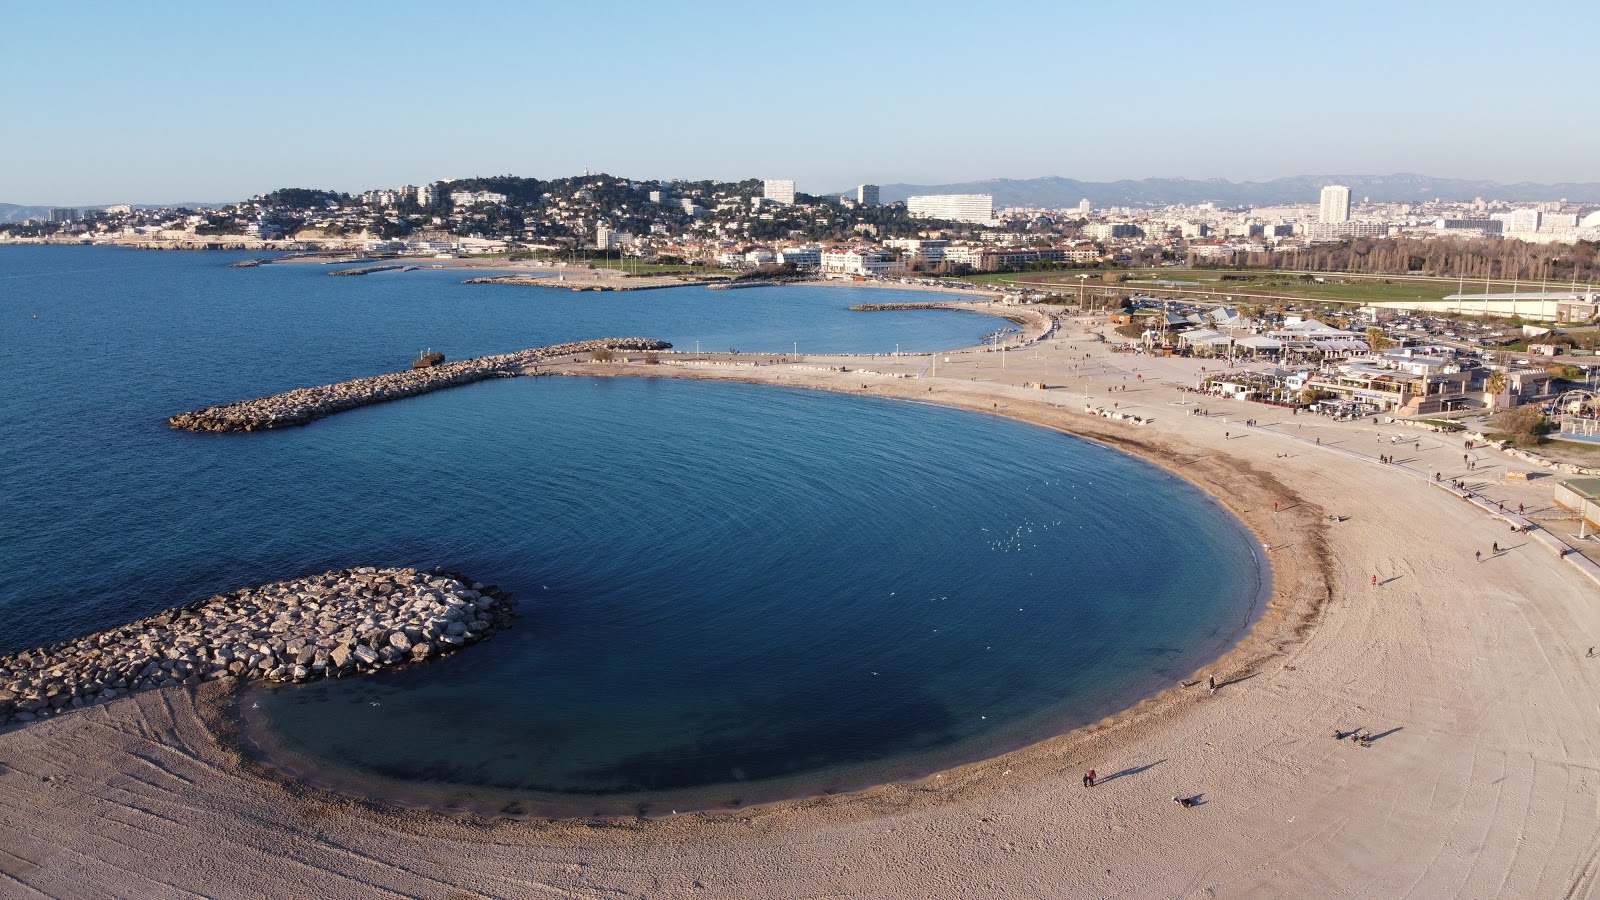 Fotografie cu Plajele Prado cu o suprafață de apa pură turcoaz